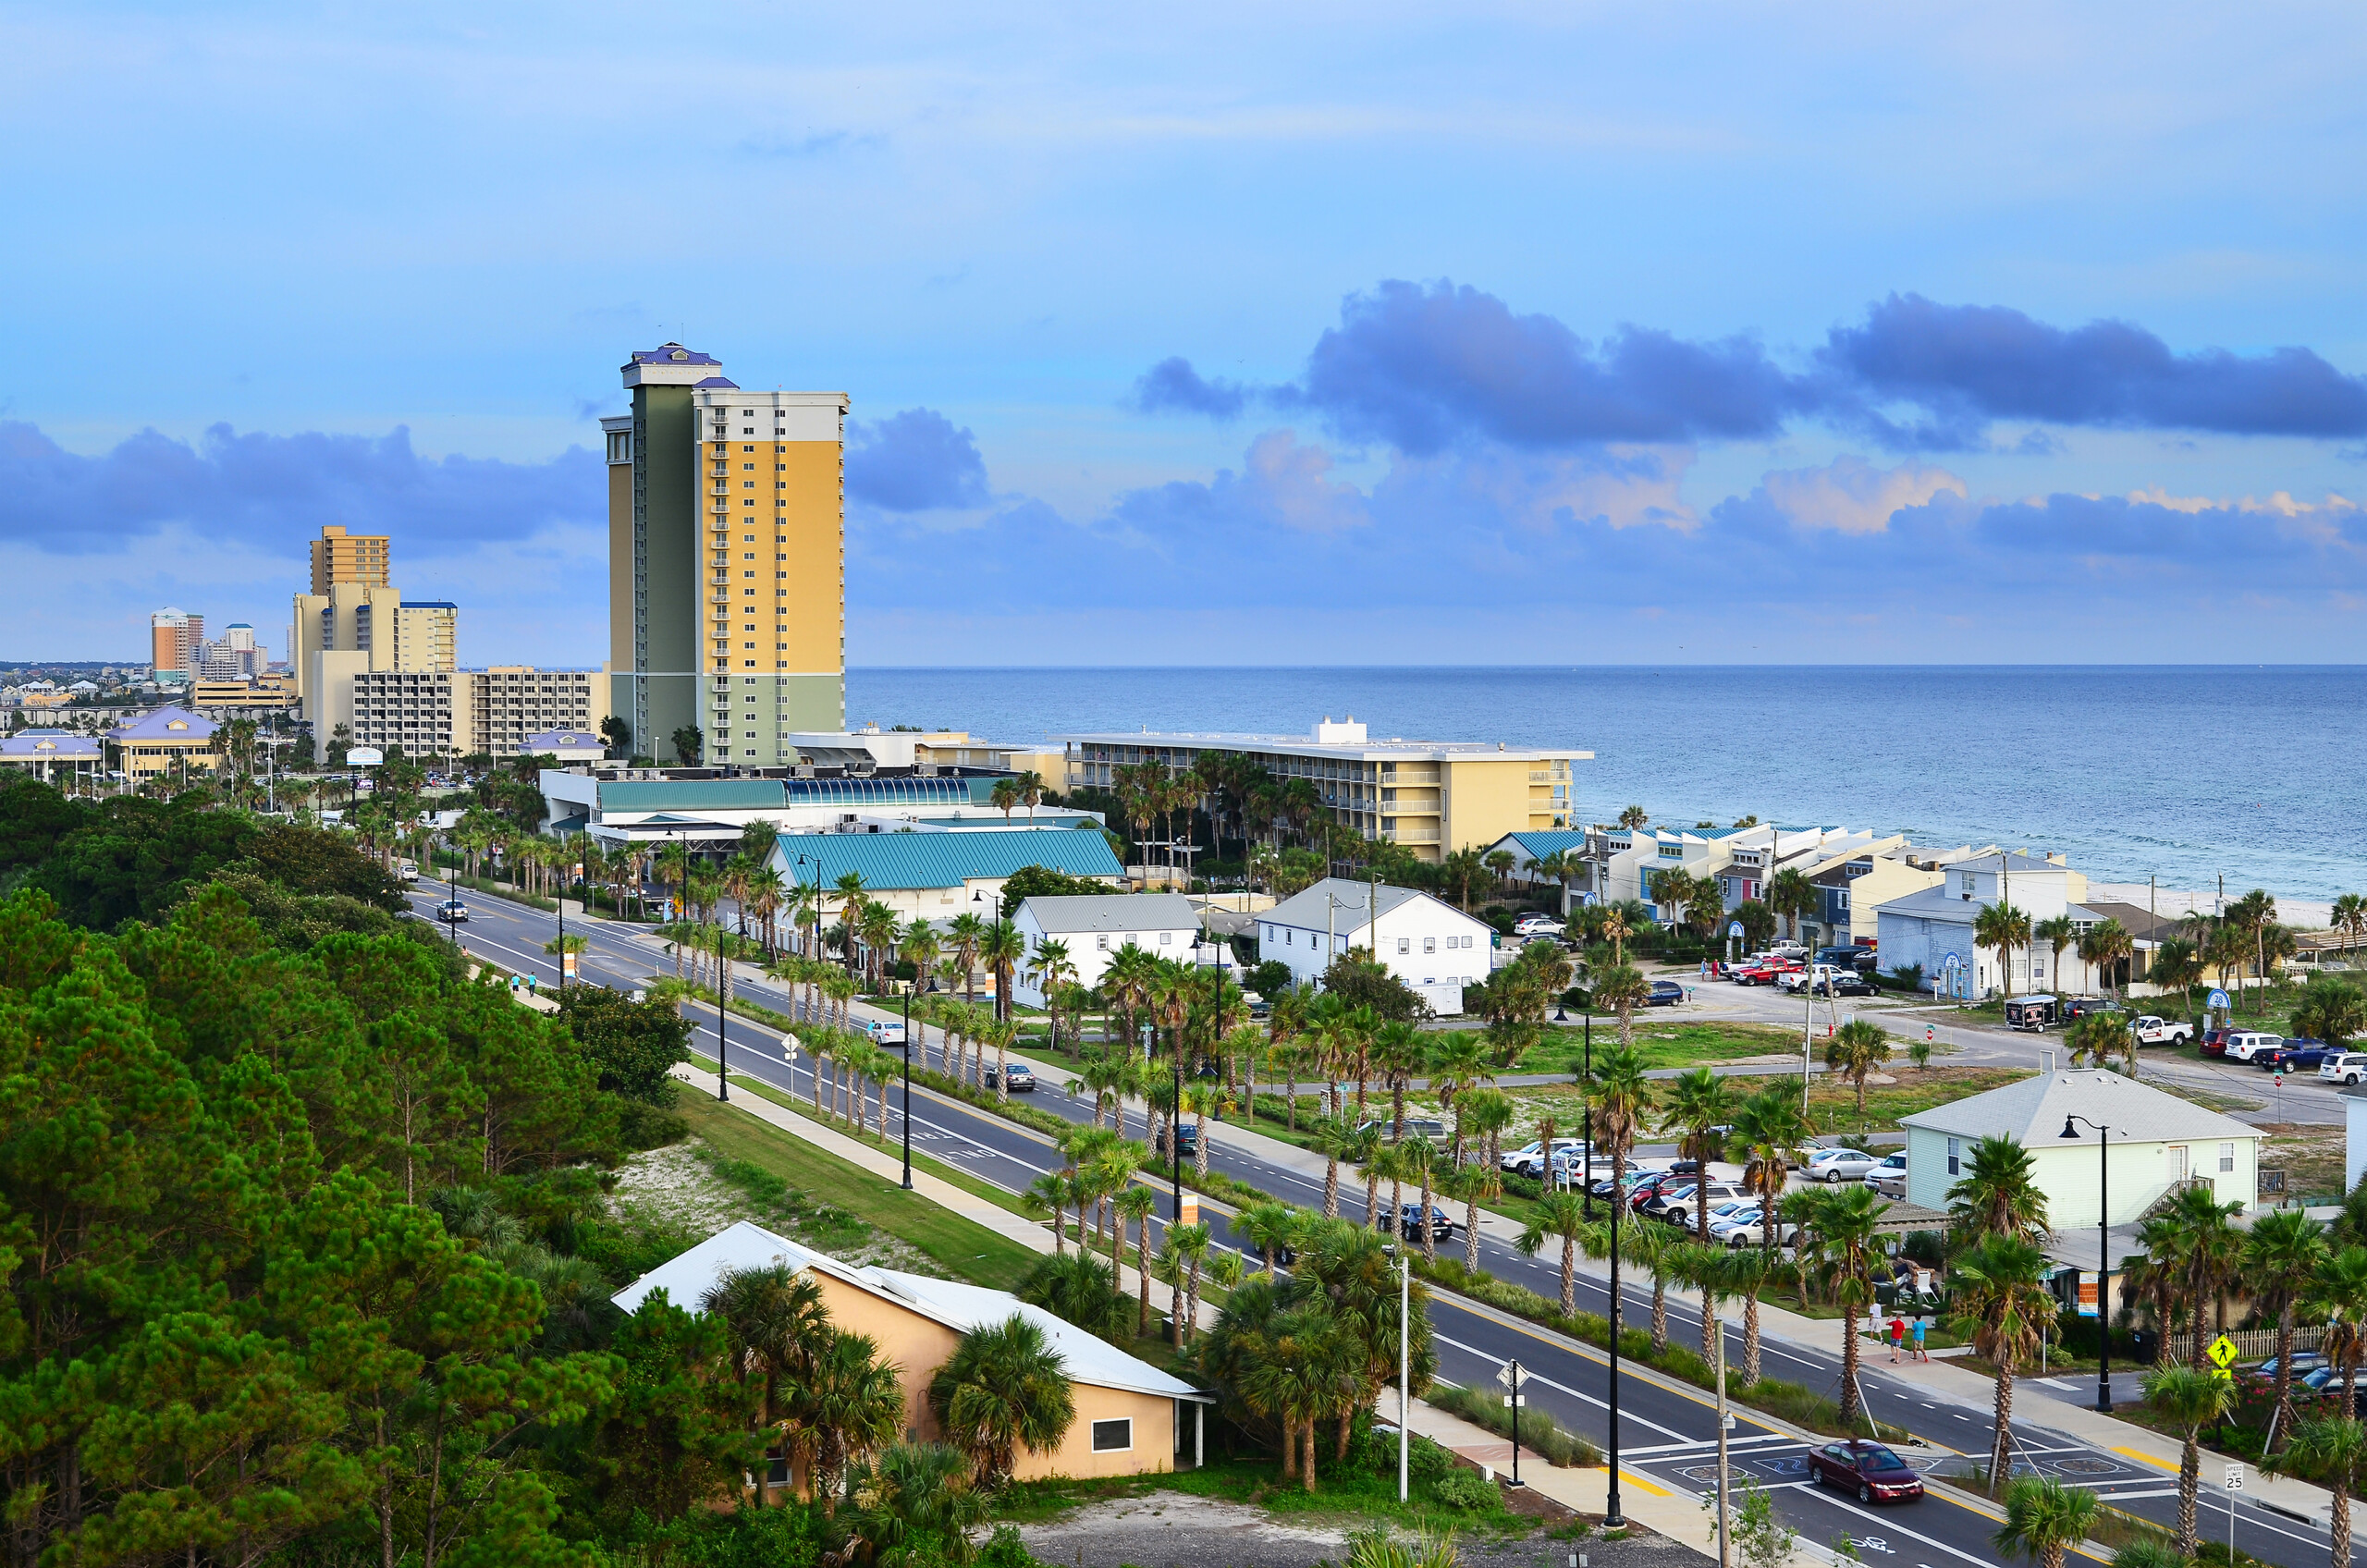 Obraz miasta Panama City Beach na Florydzie, wzdłuż Front Beach Road o zmierzchu, licencja: shutterstock/By RRob Hainer